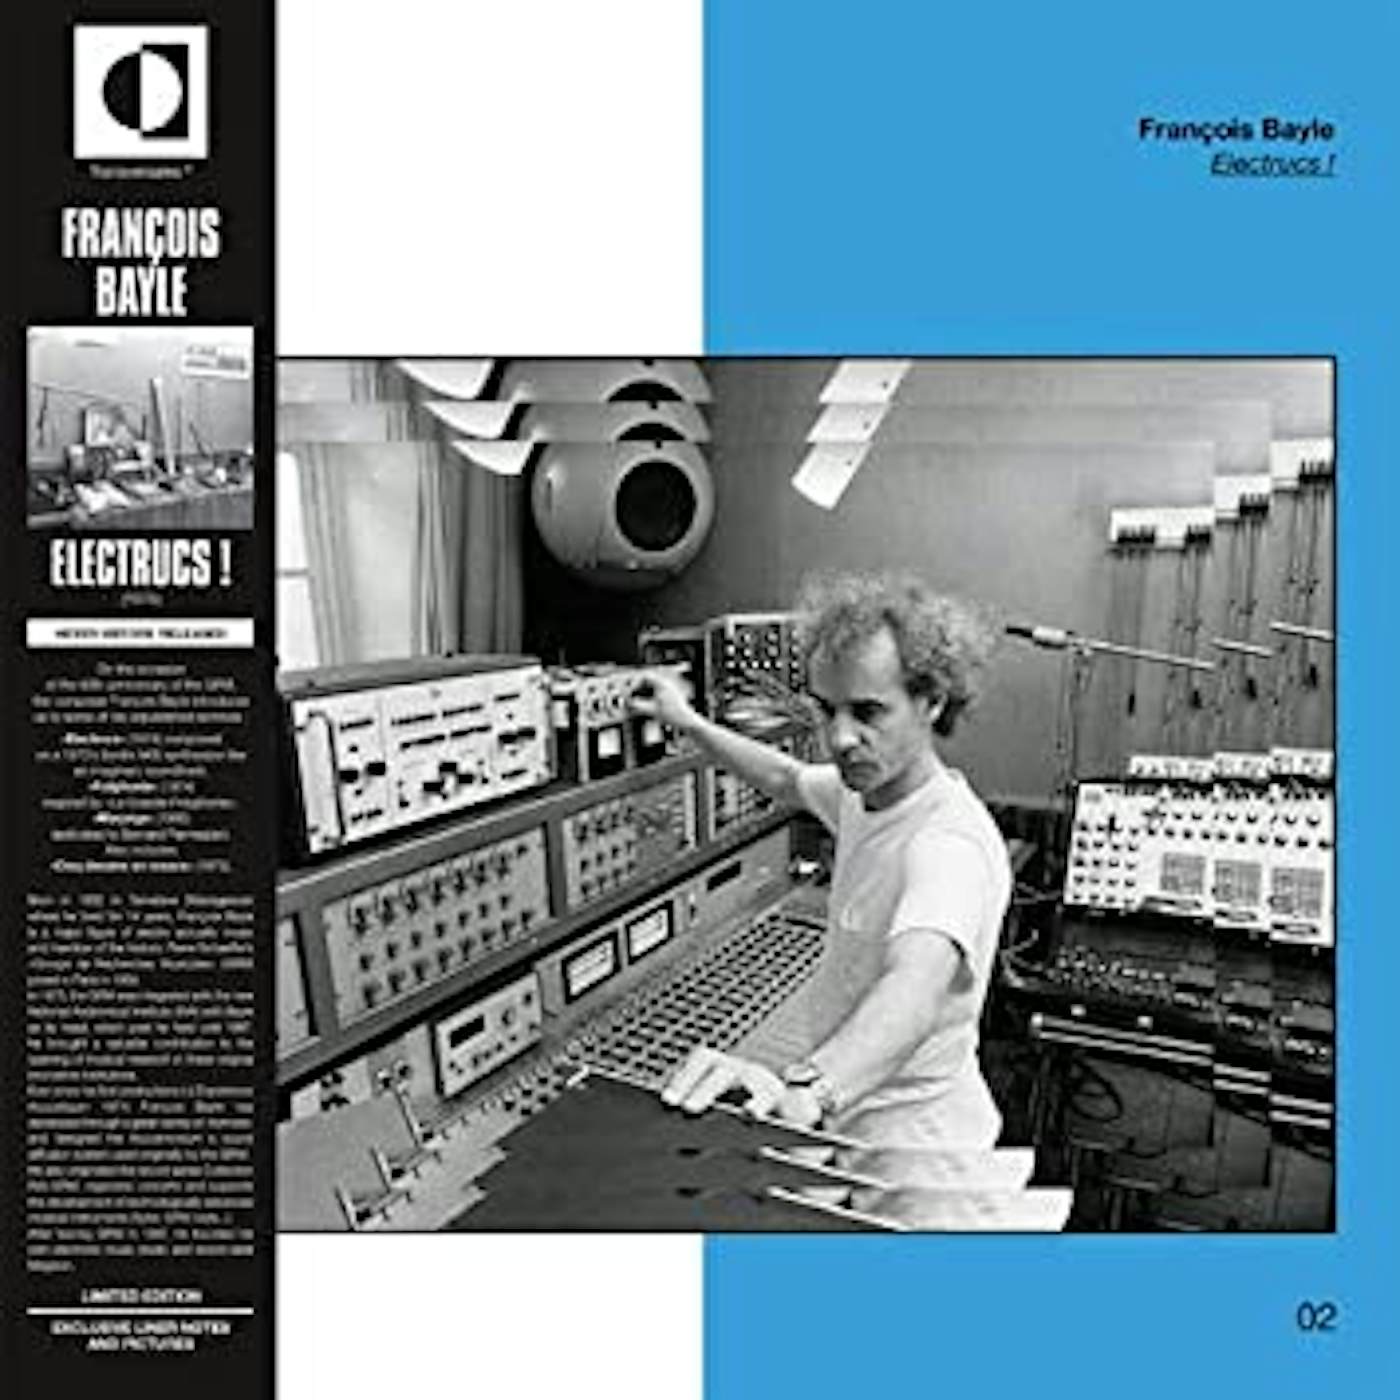 François Bayle ELECTRUCS / O.S.T. Vinyl Record